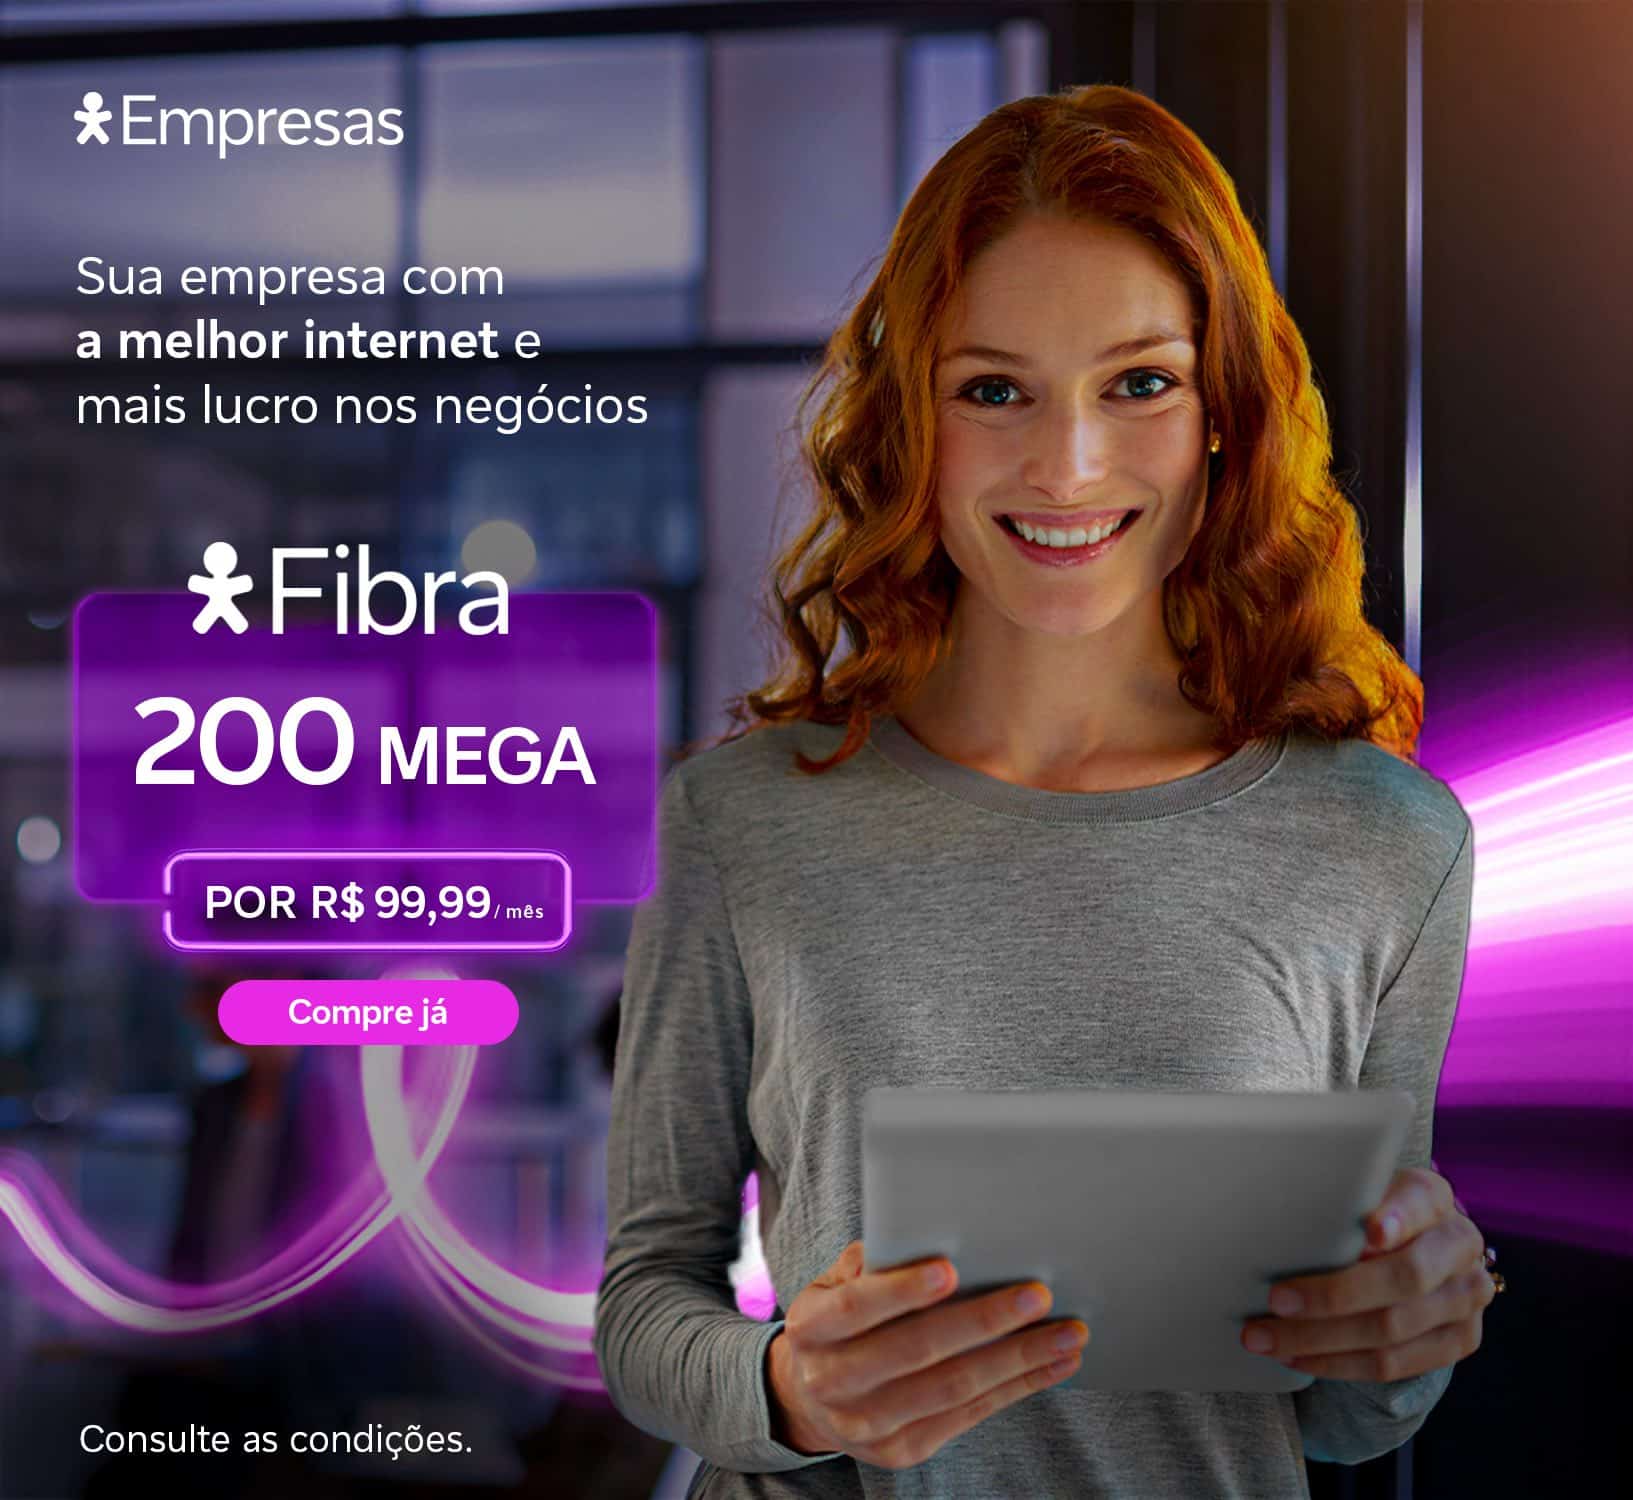 https://www.vivo.com.br/para-empresas/produtos-e-servicos/servicos-essenciais/ultrabanda-larga/internet-fibra